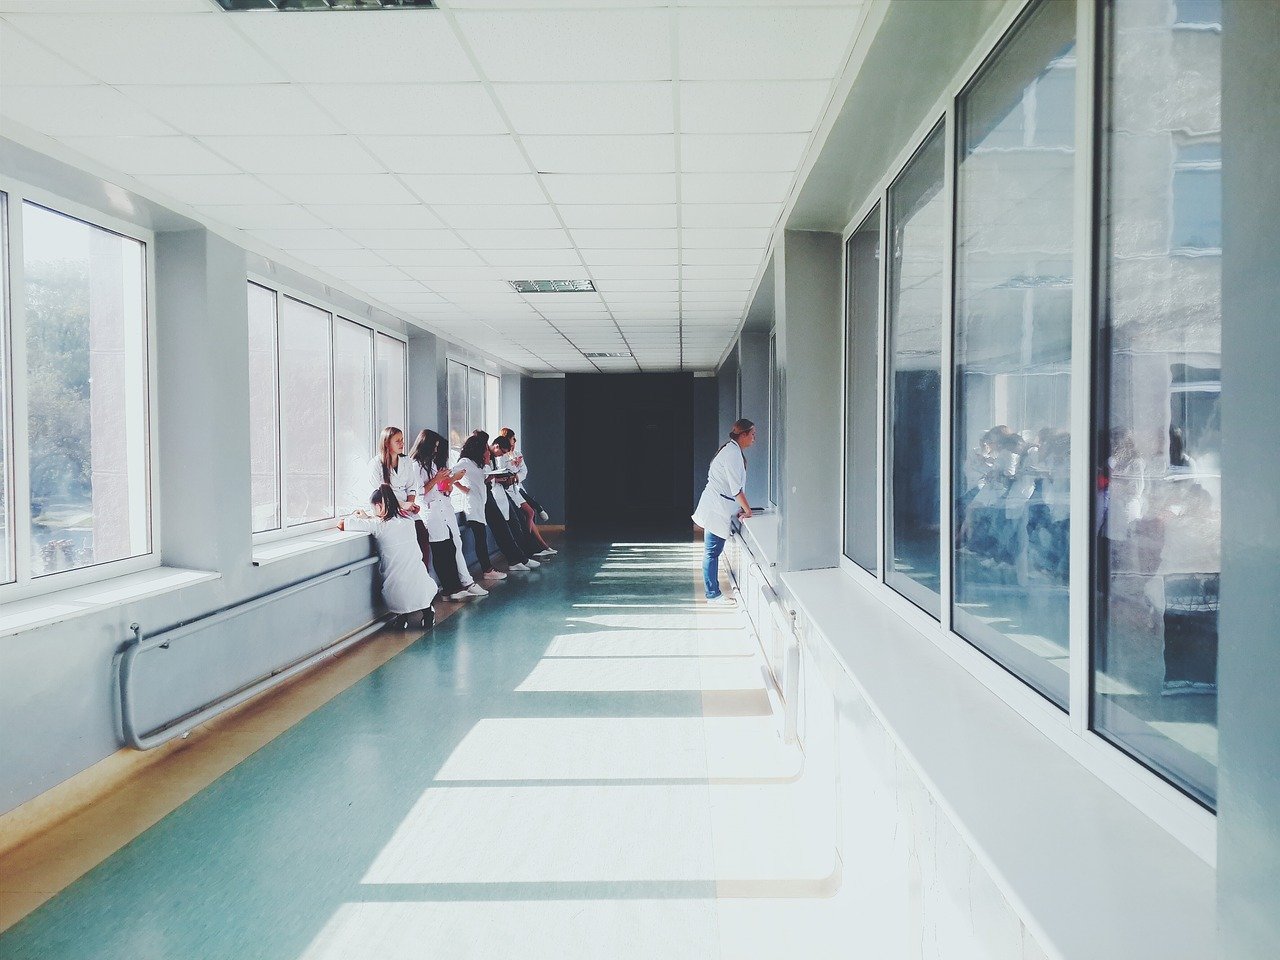 Couloir dans un hôpital. | Photo : Pixabay